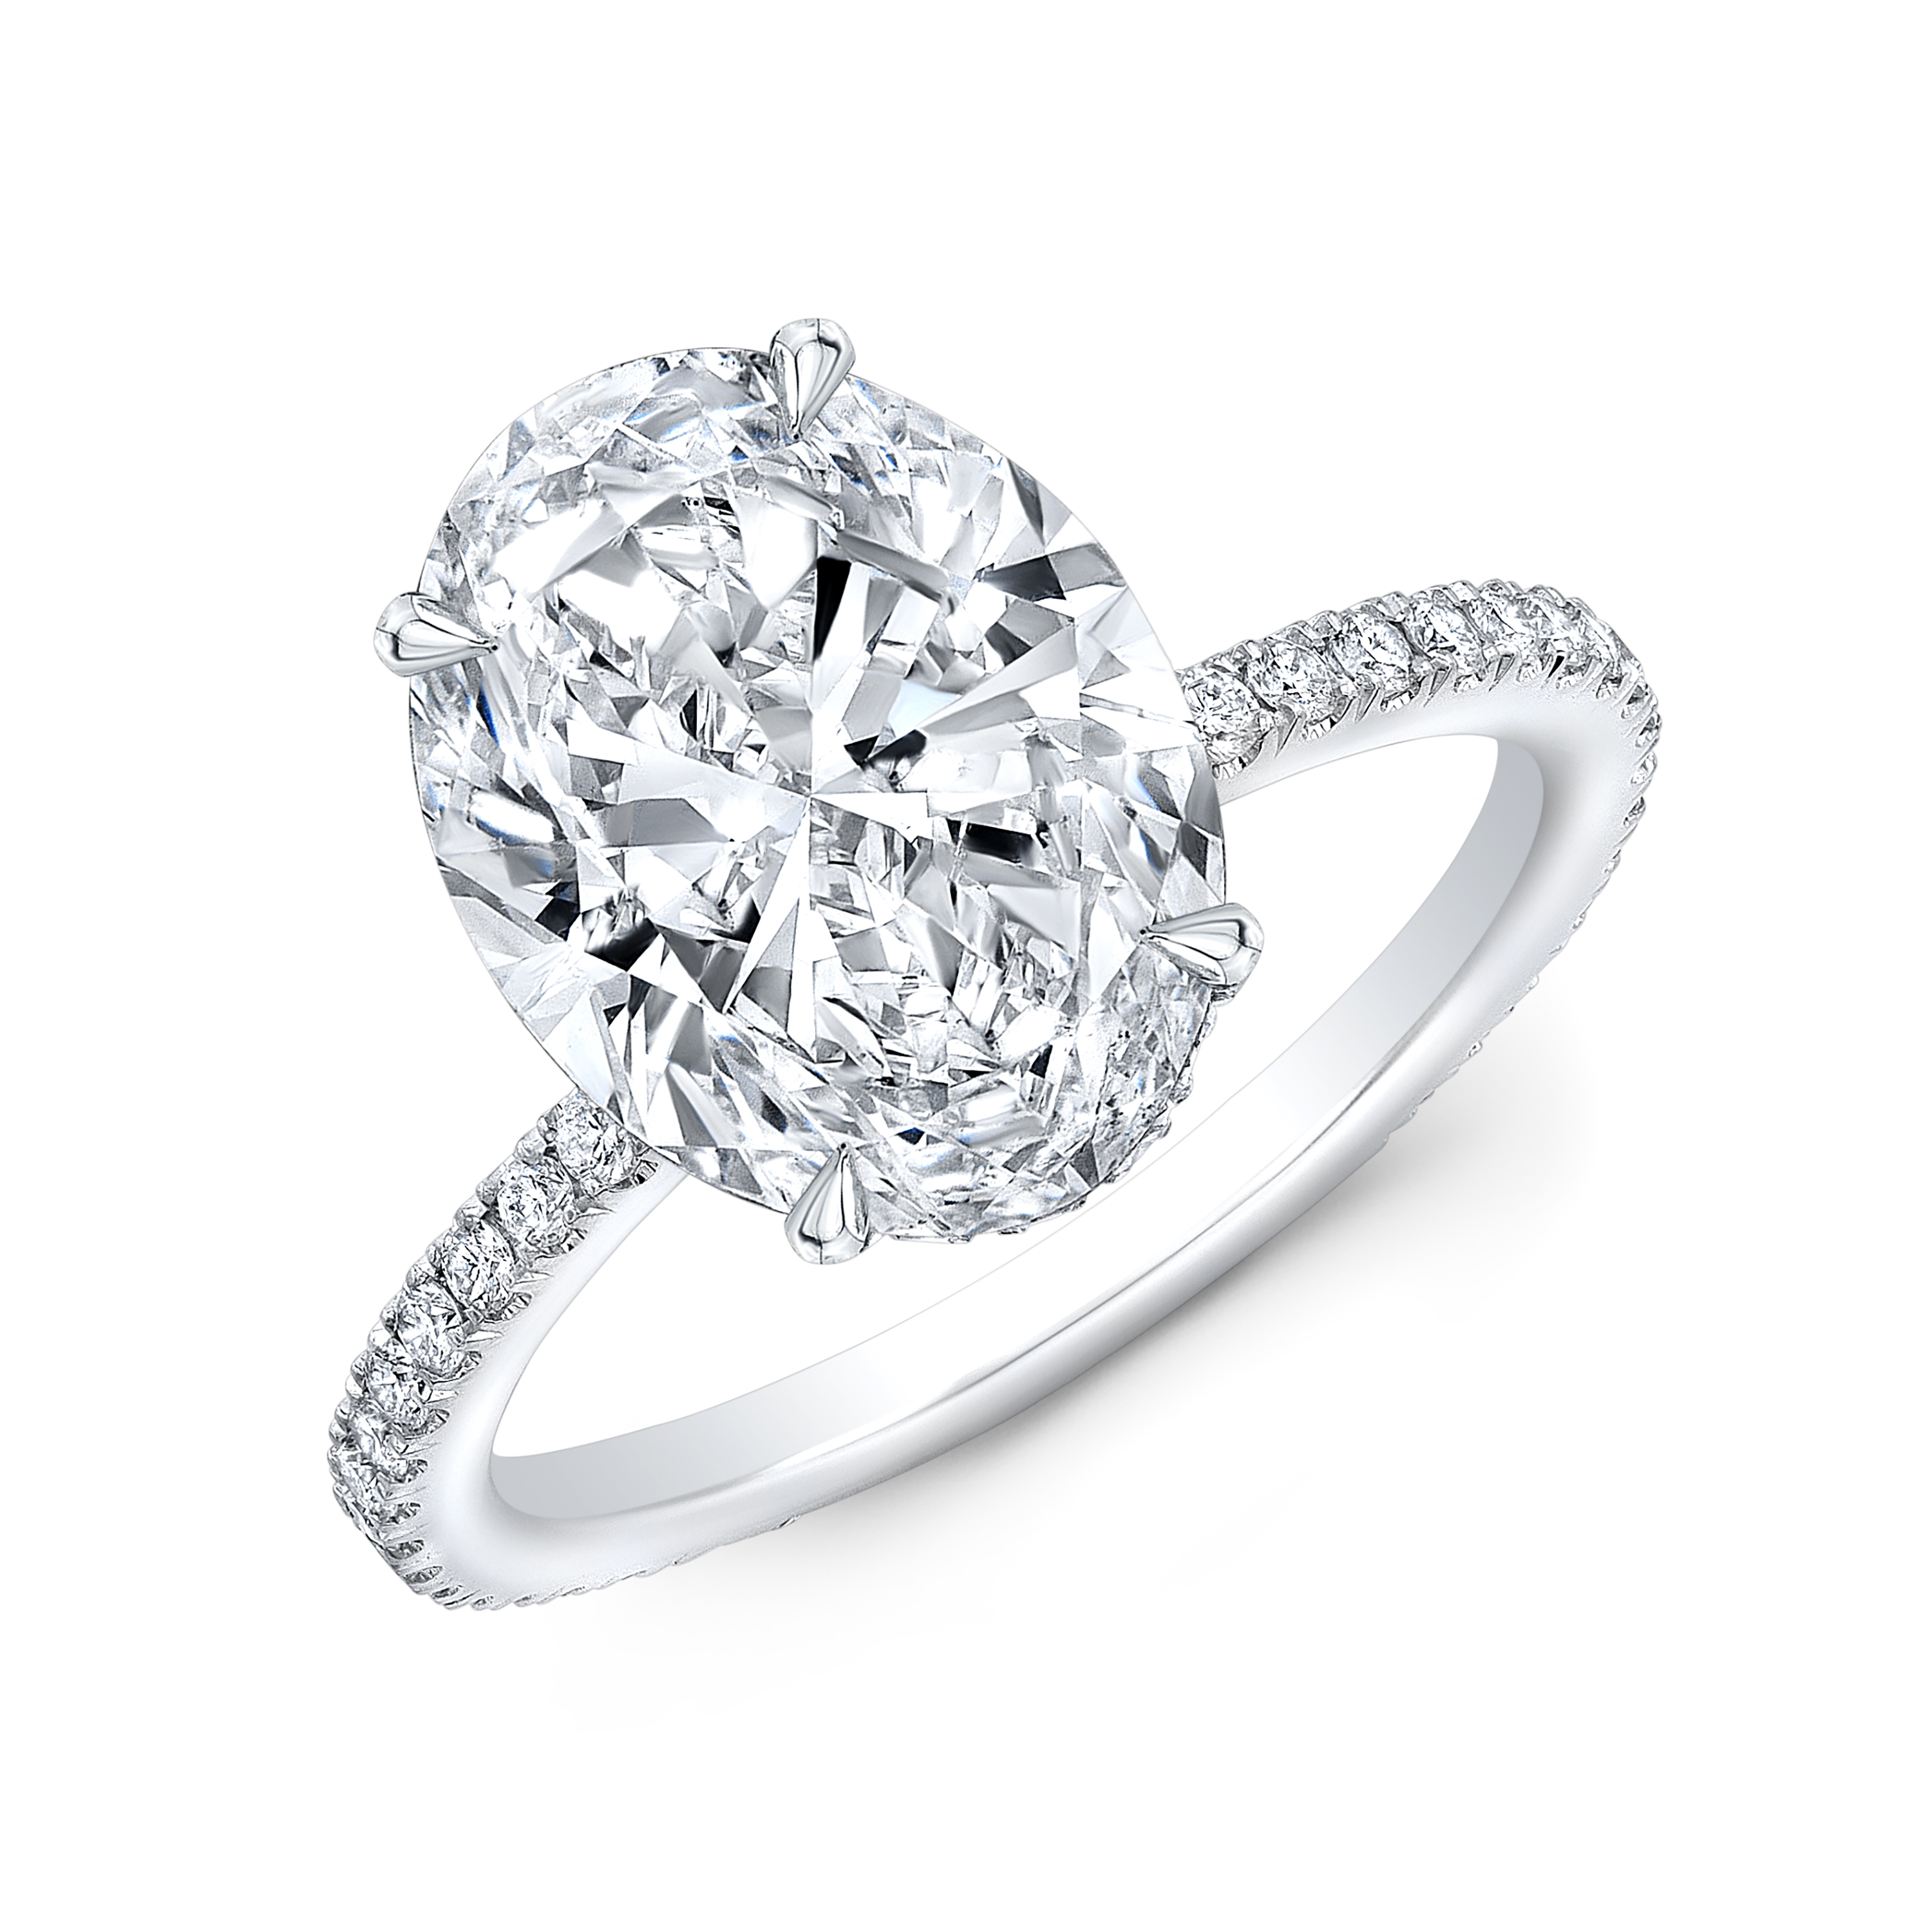 Pavé diamond solitaire wedding ring set